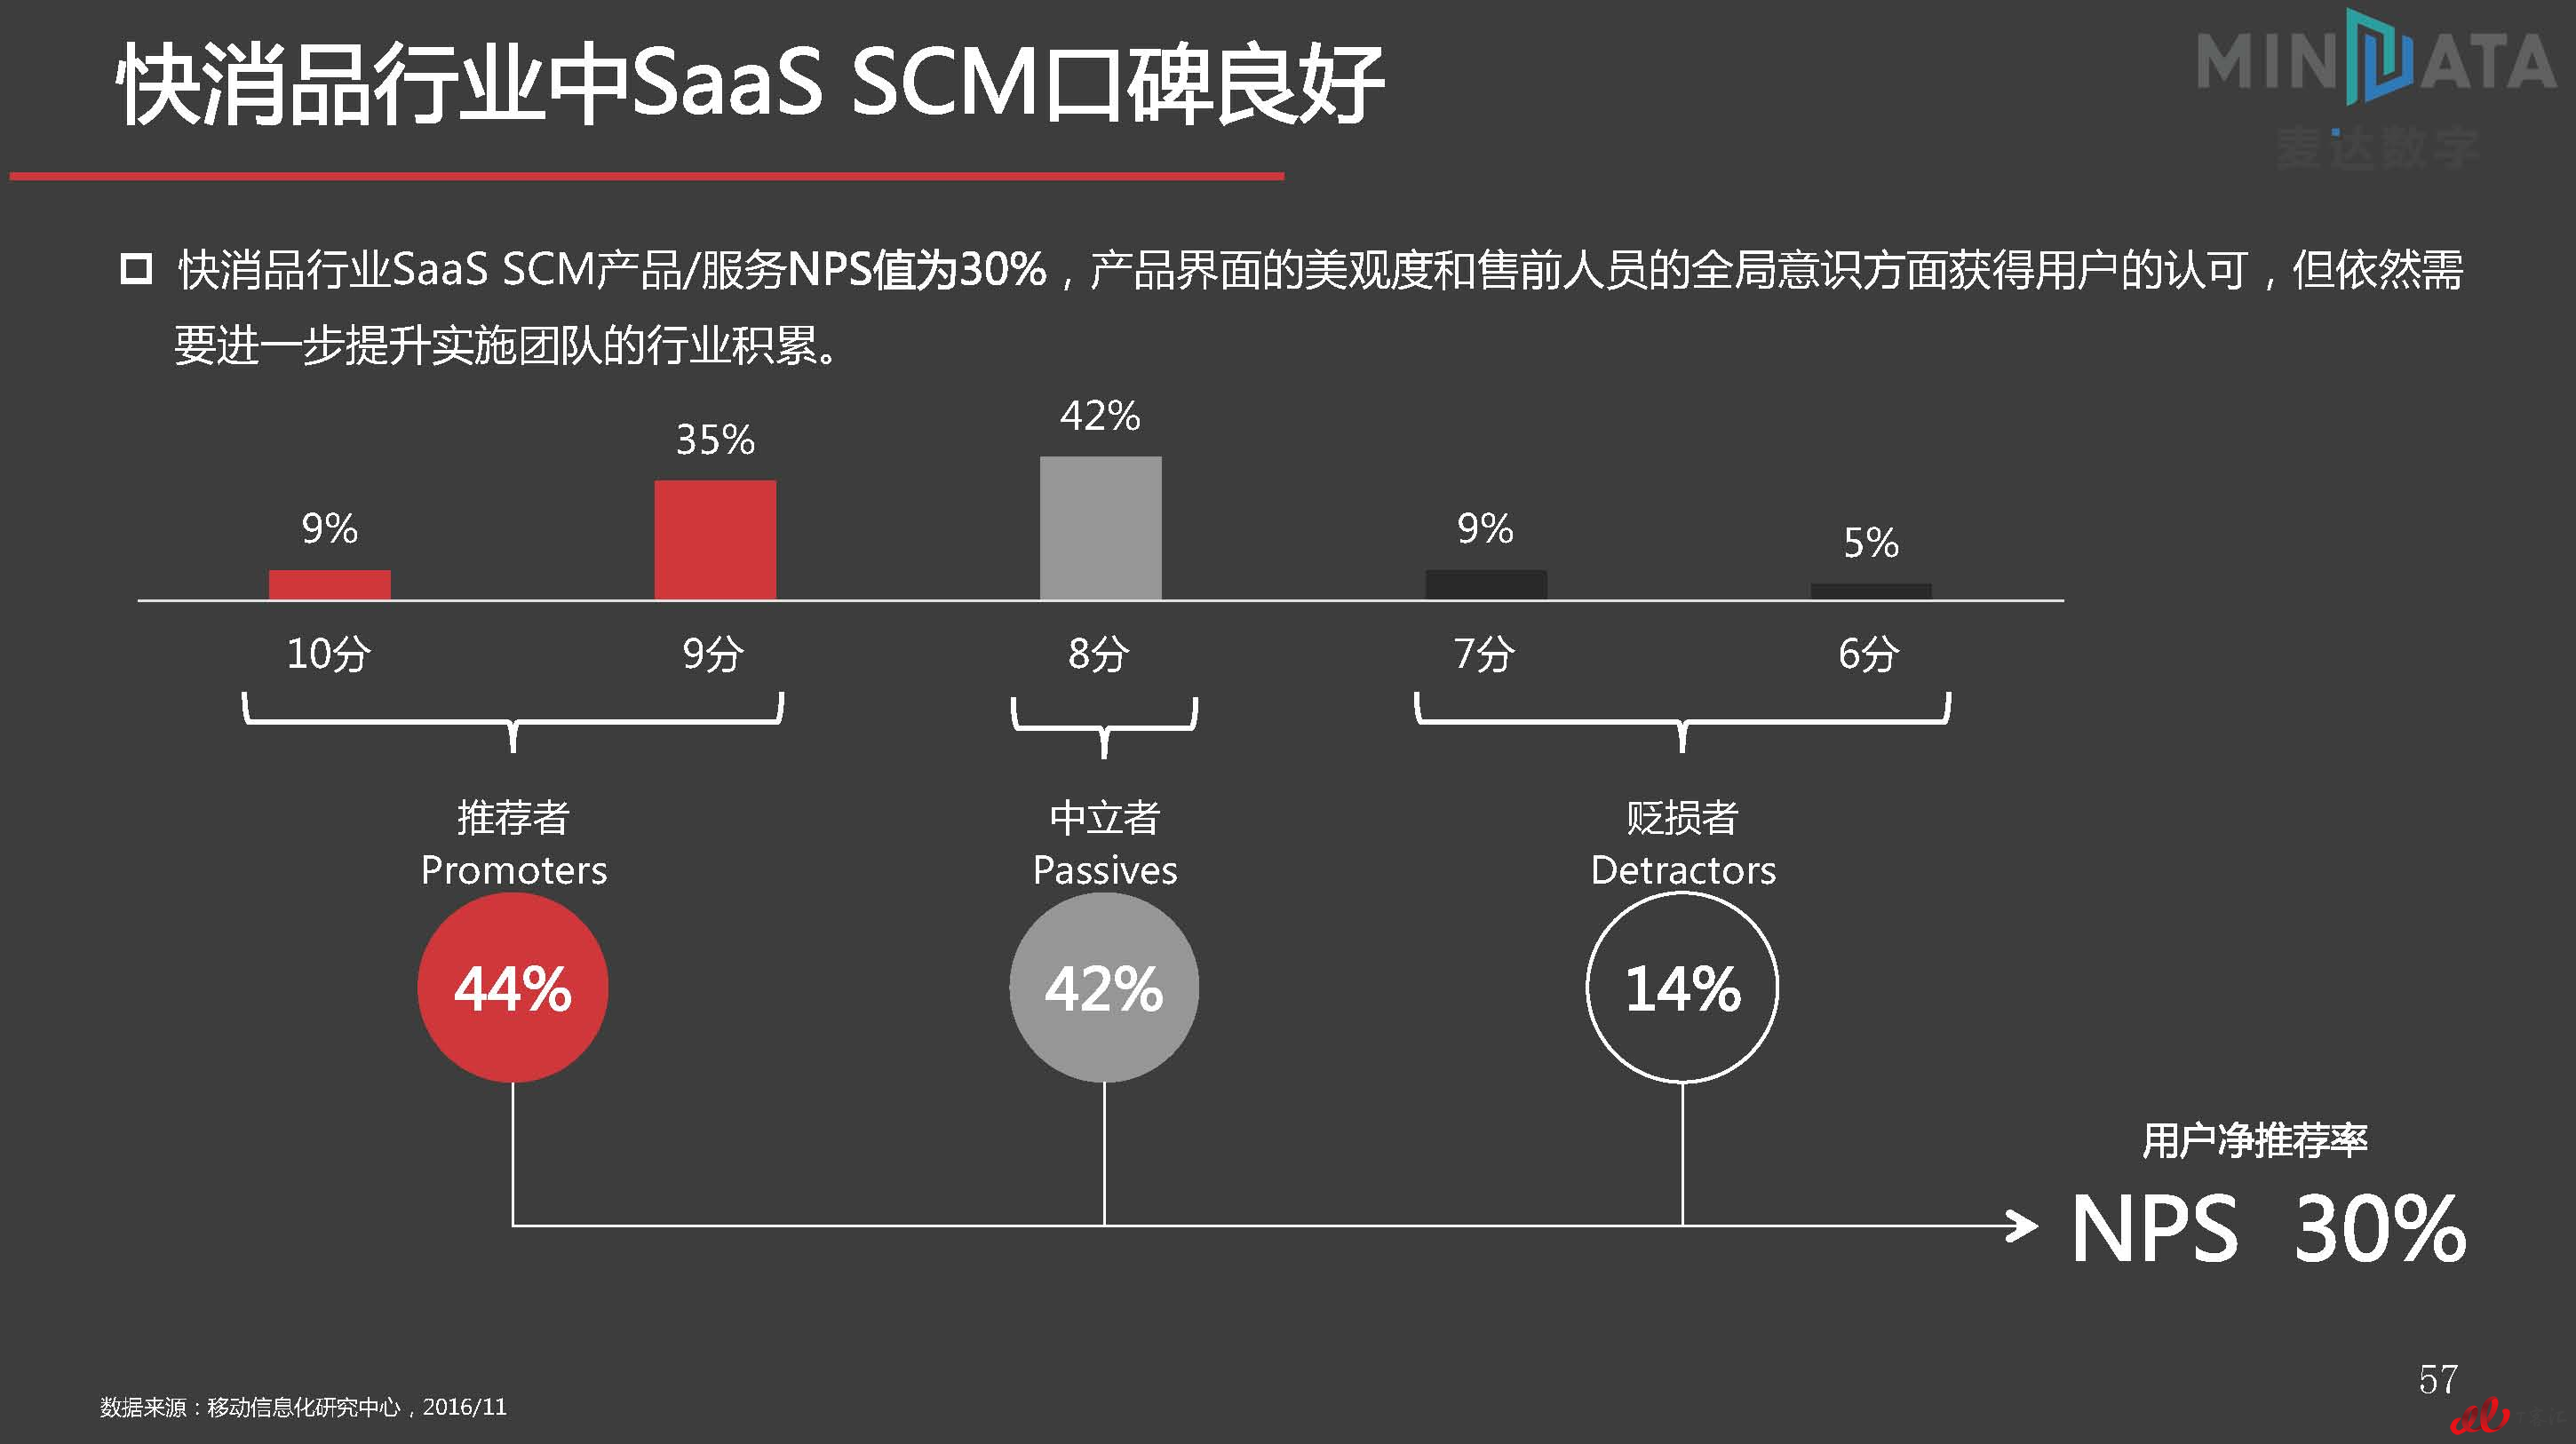 麦达SaaS指数——SaaS SCM NPS研究_页面_57.jpg